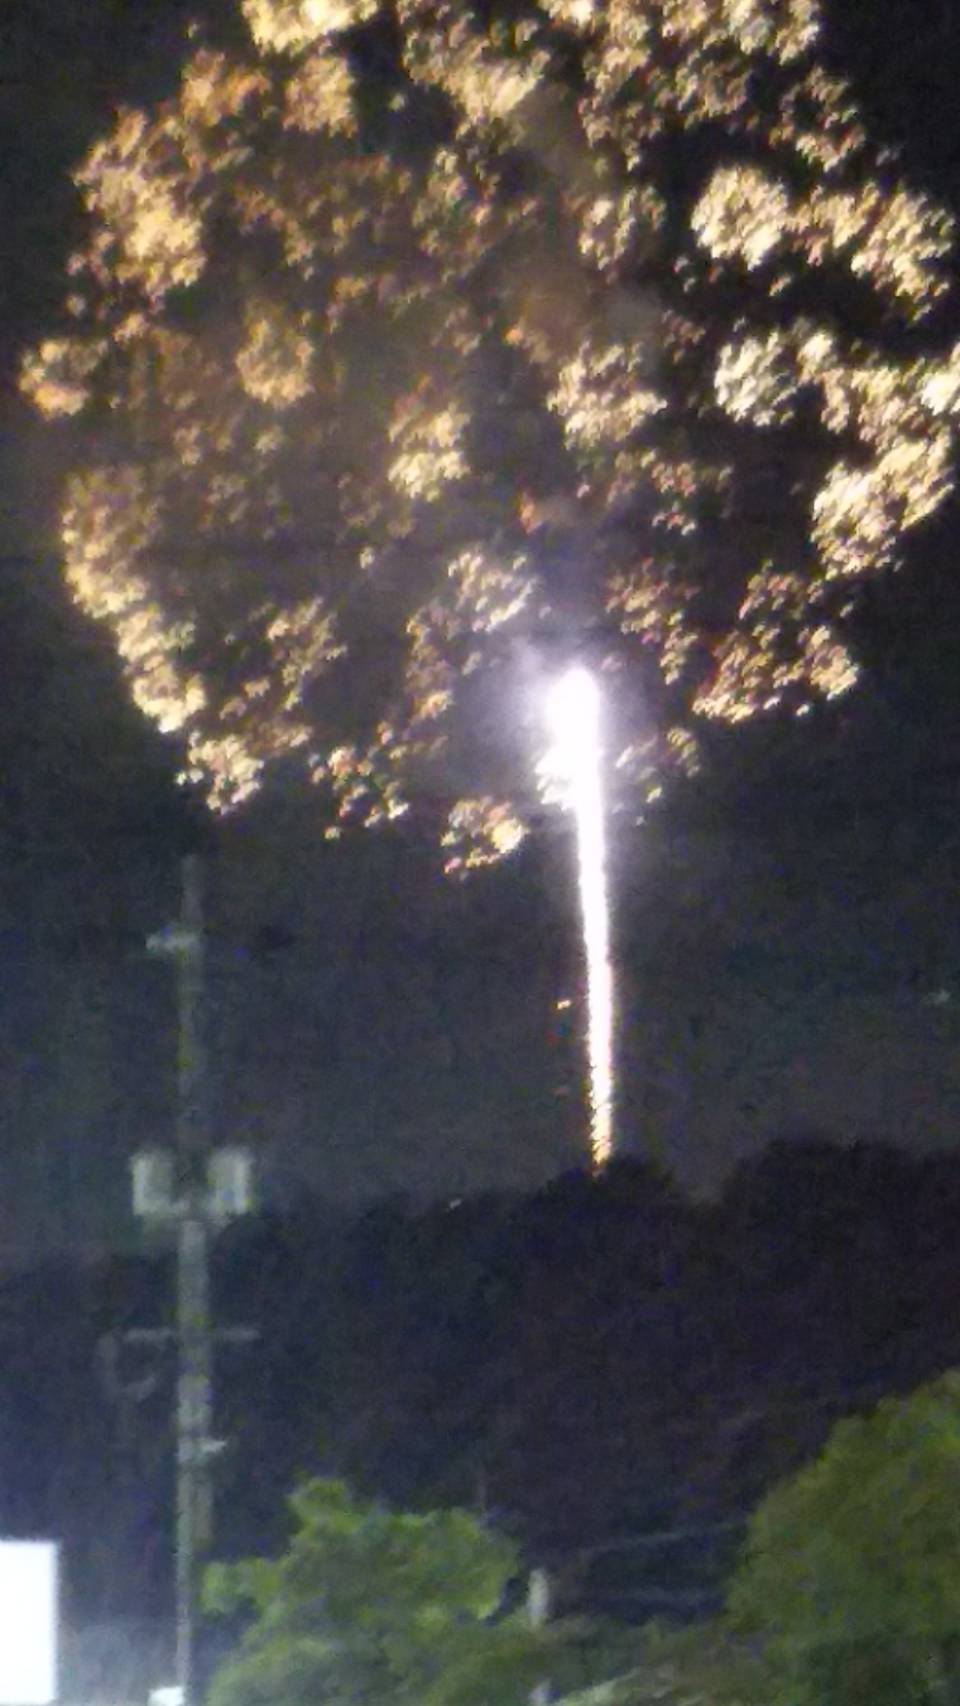 倉敷市 8月8日足高神社で花火が1000発打ち上げられました 号外net 倉敷市